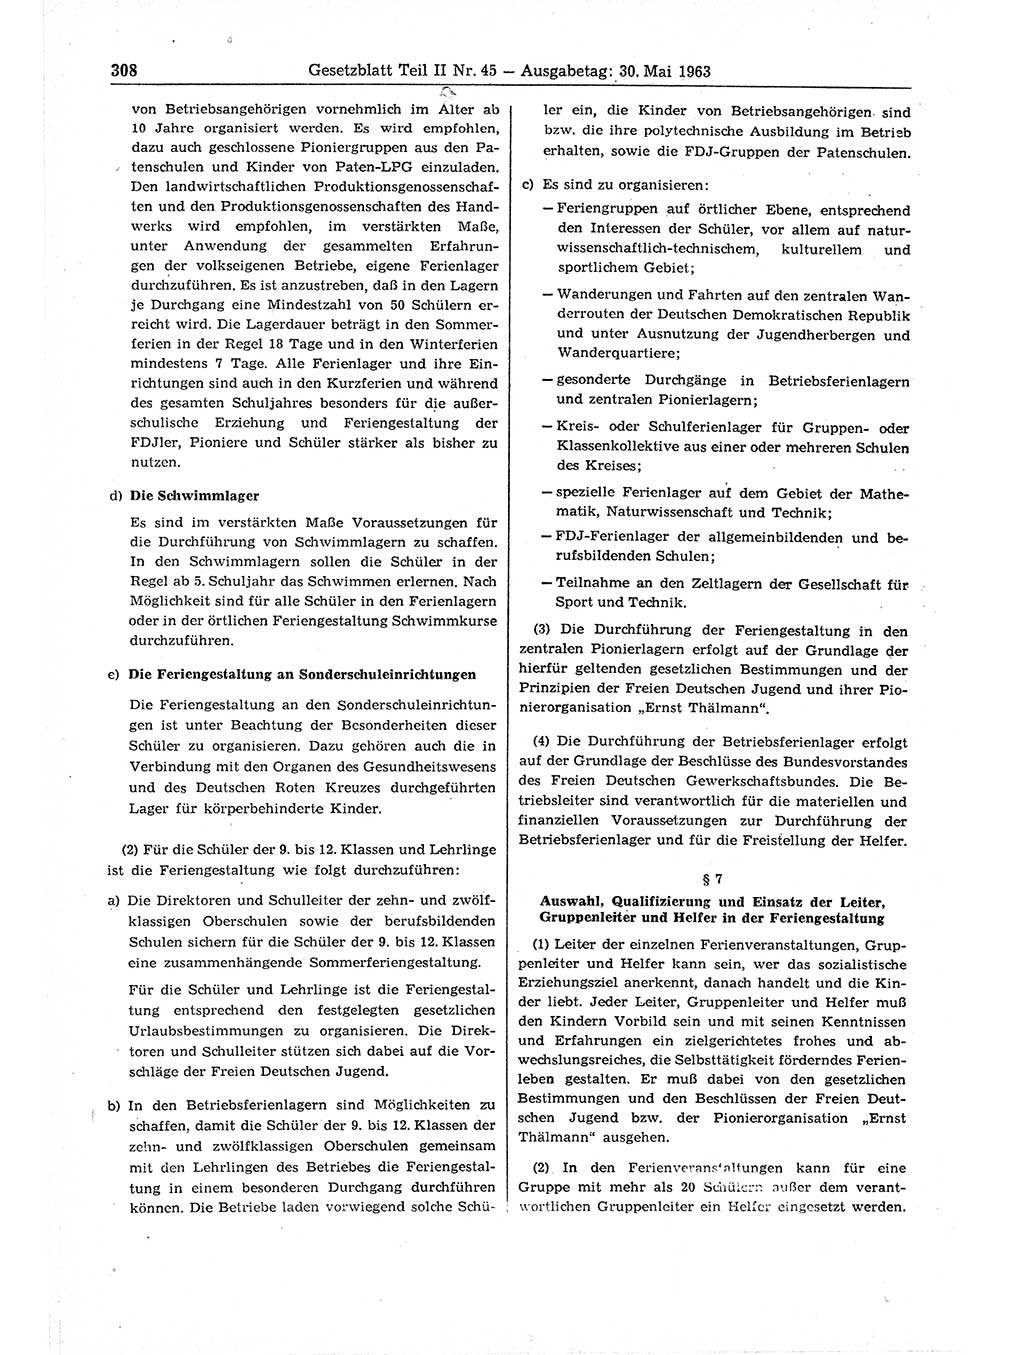 Gesetzblatt (GBl.) der Deutschen Demokratischen Republik (DDR) Teil ⅠⅠ 1963, Seite 308 (GBl. DDR ⅠⅠ 1963, S. 308)